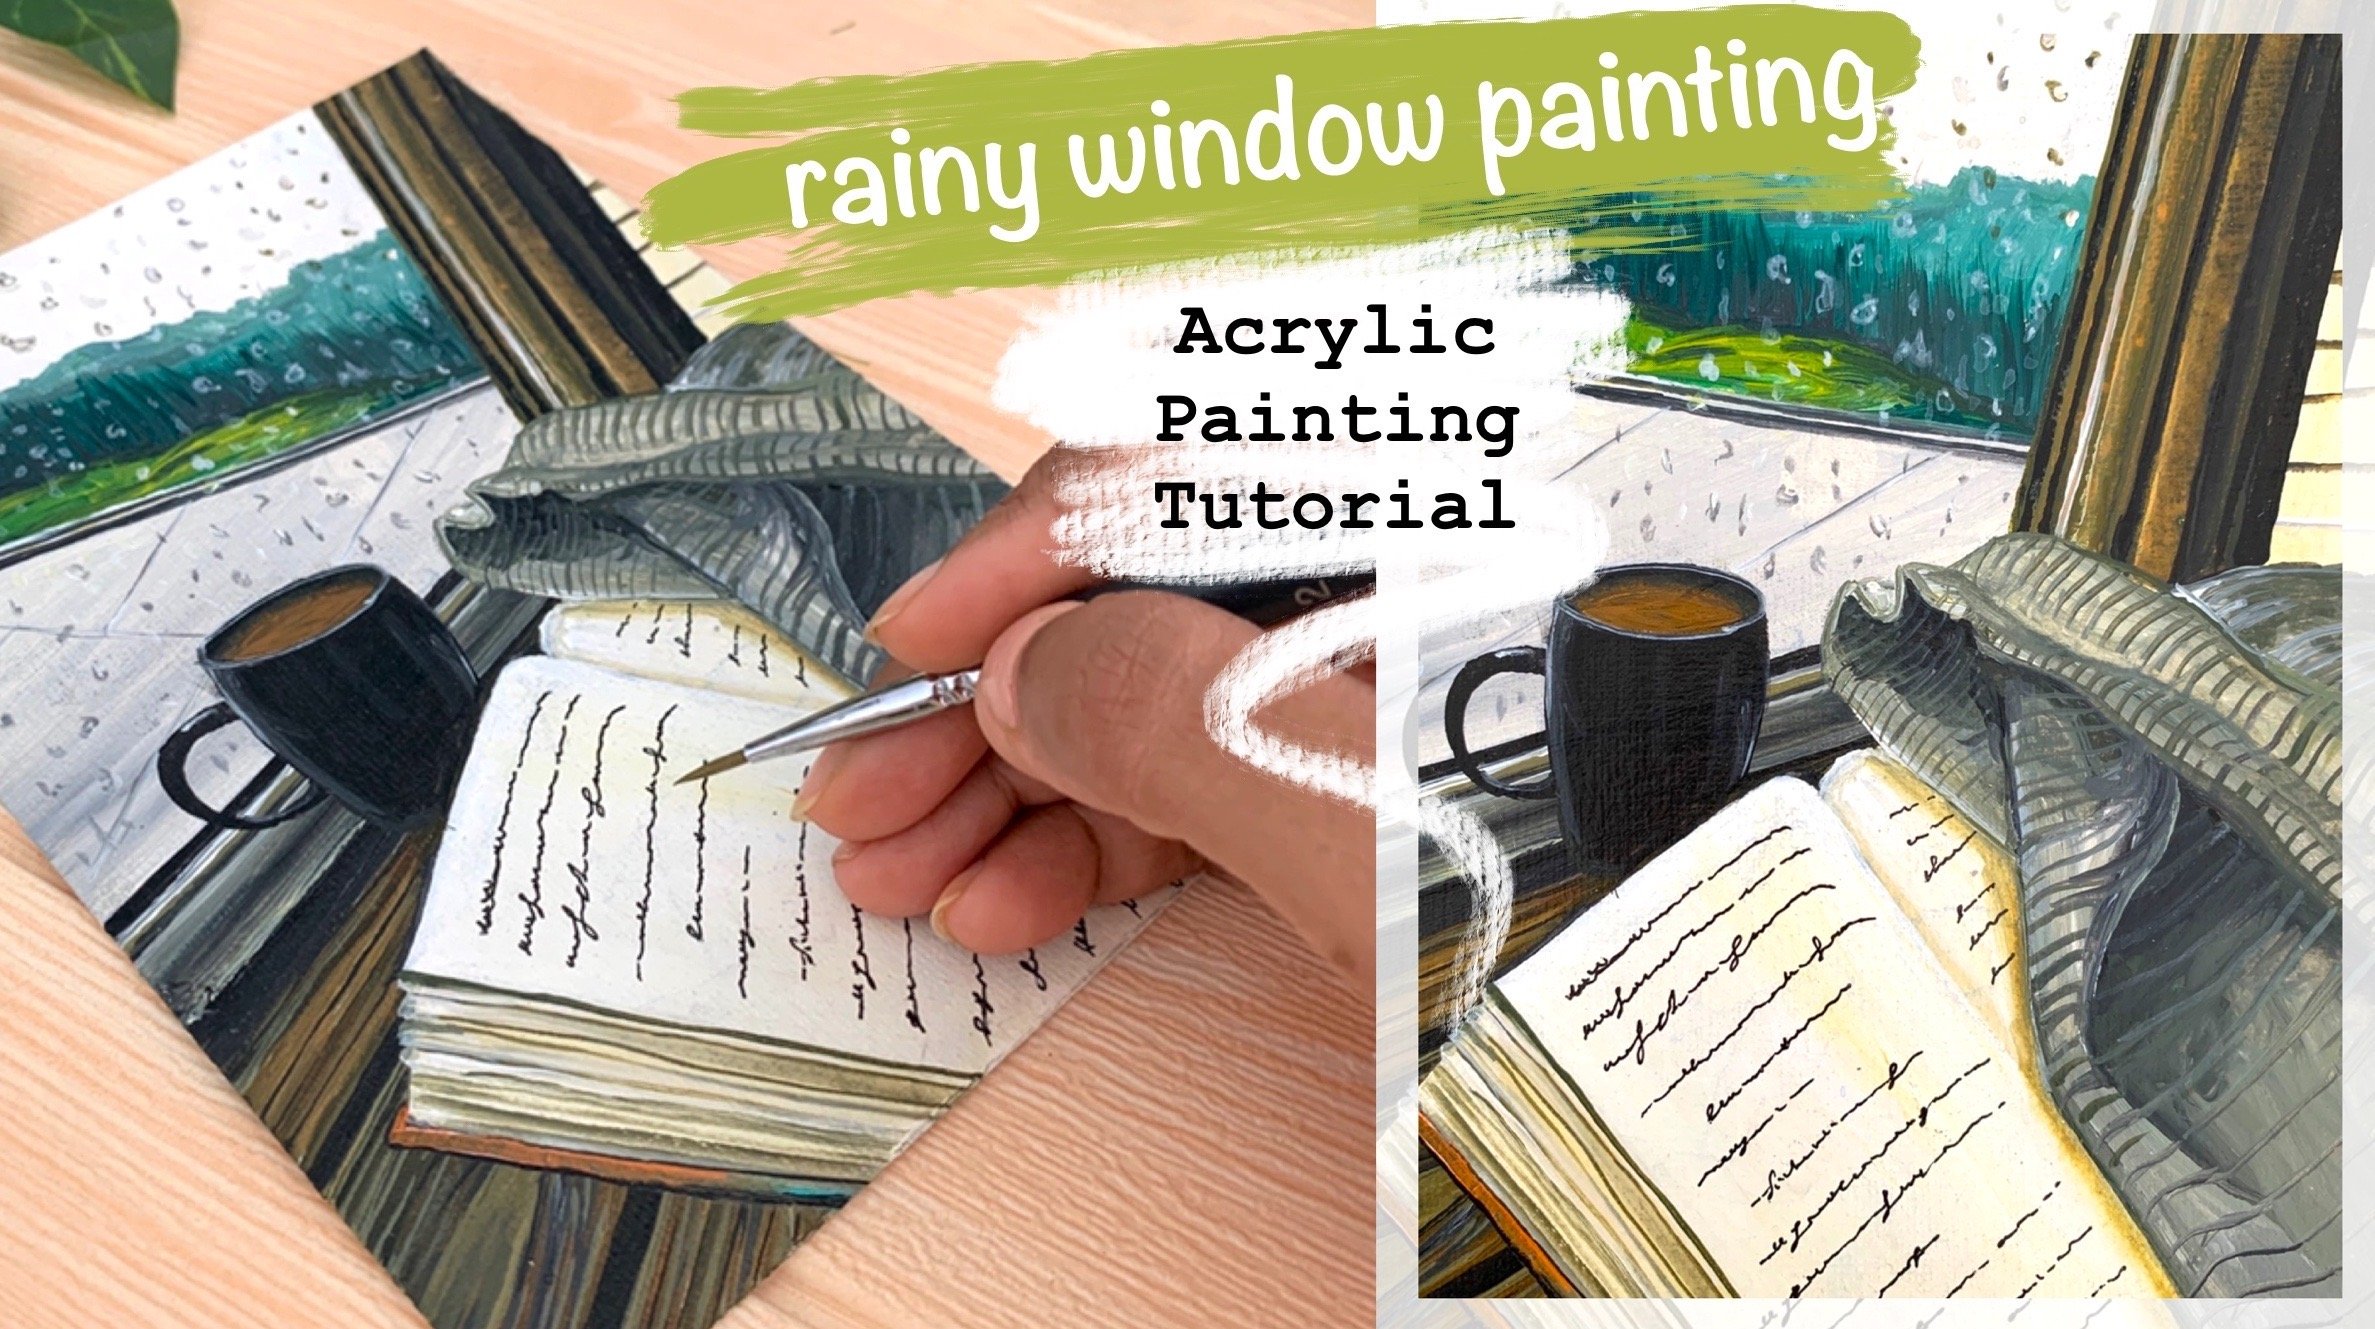 rainy window painting acrylic painting tutorial